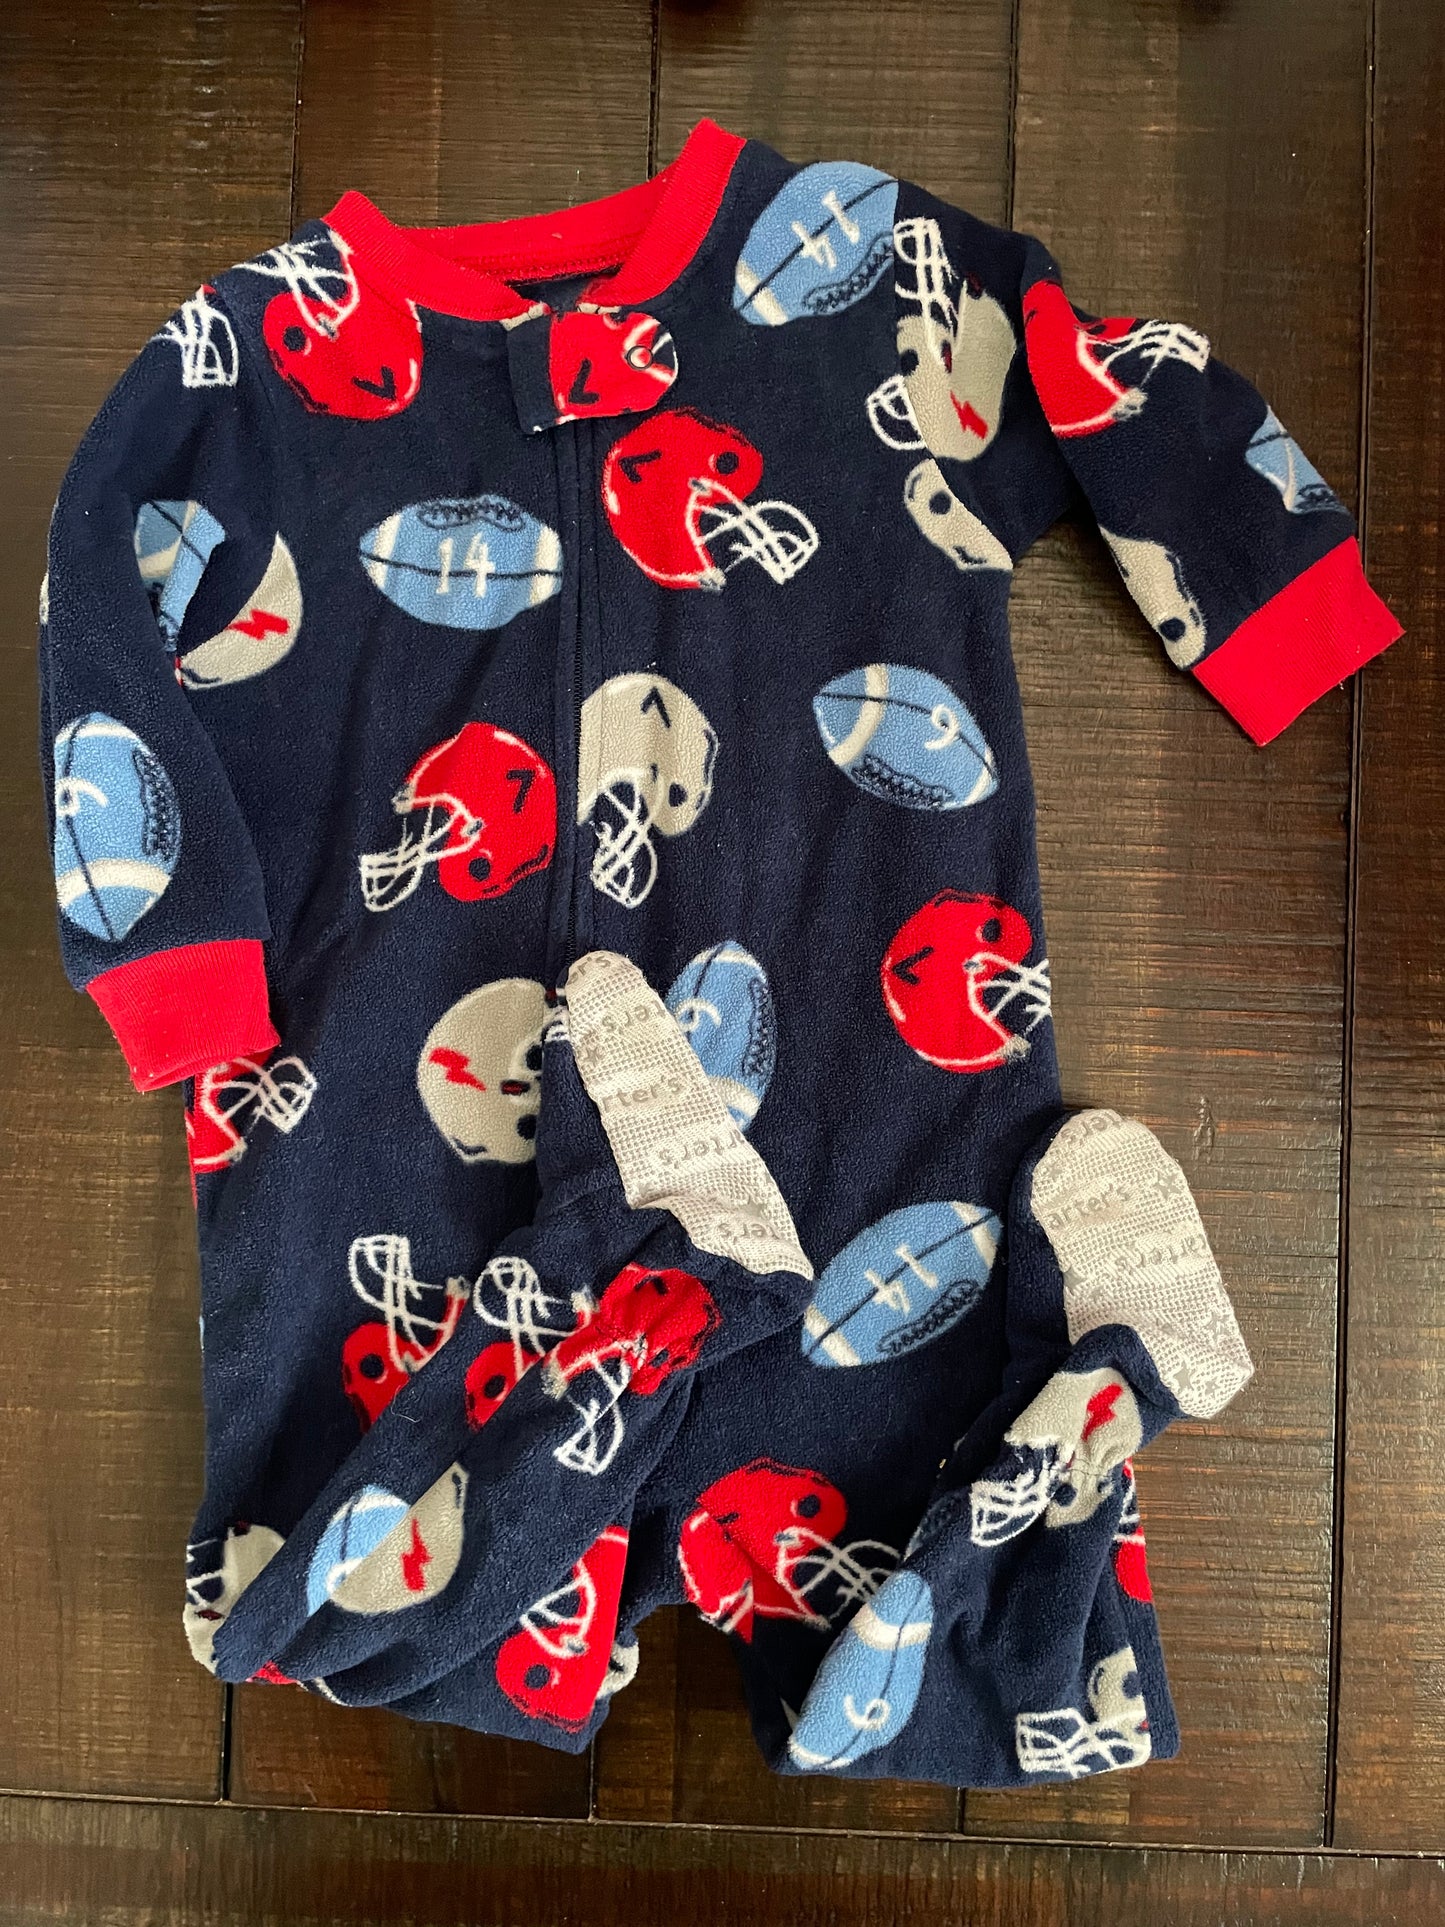 Carters 12 month footie pajamas